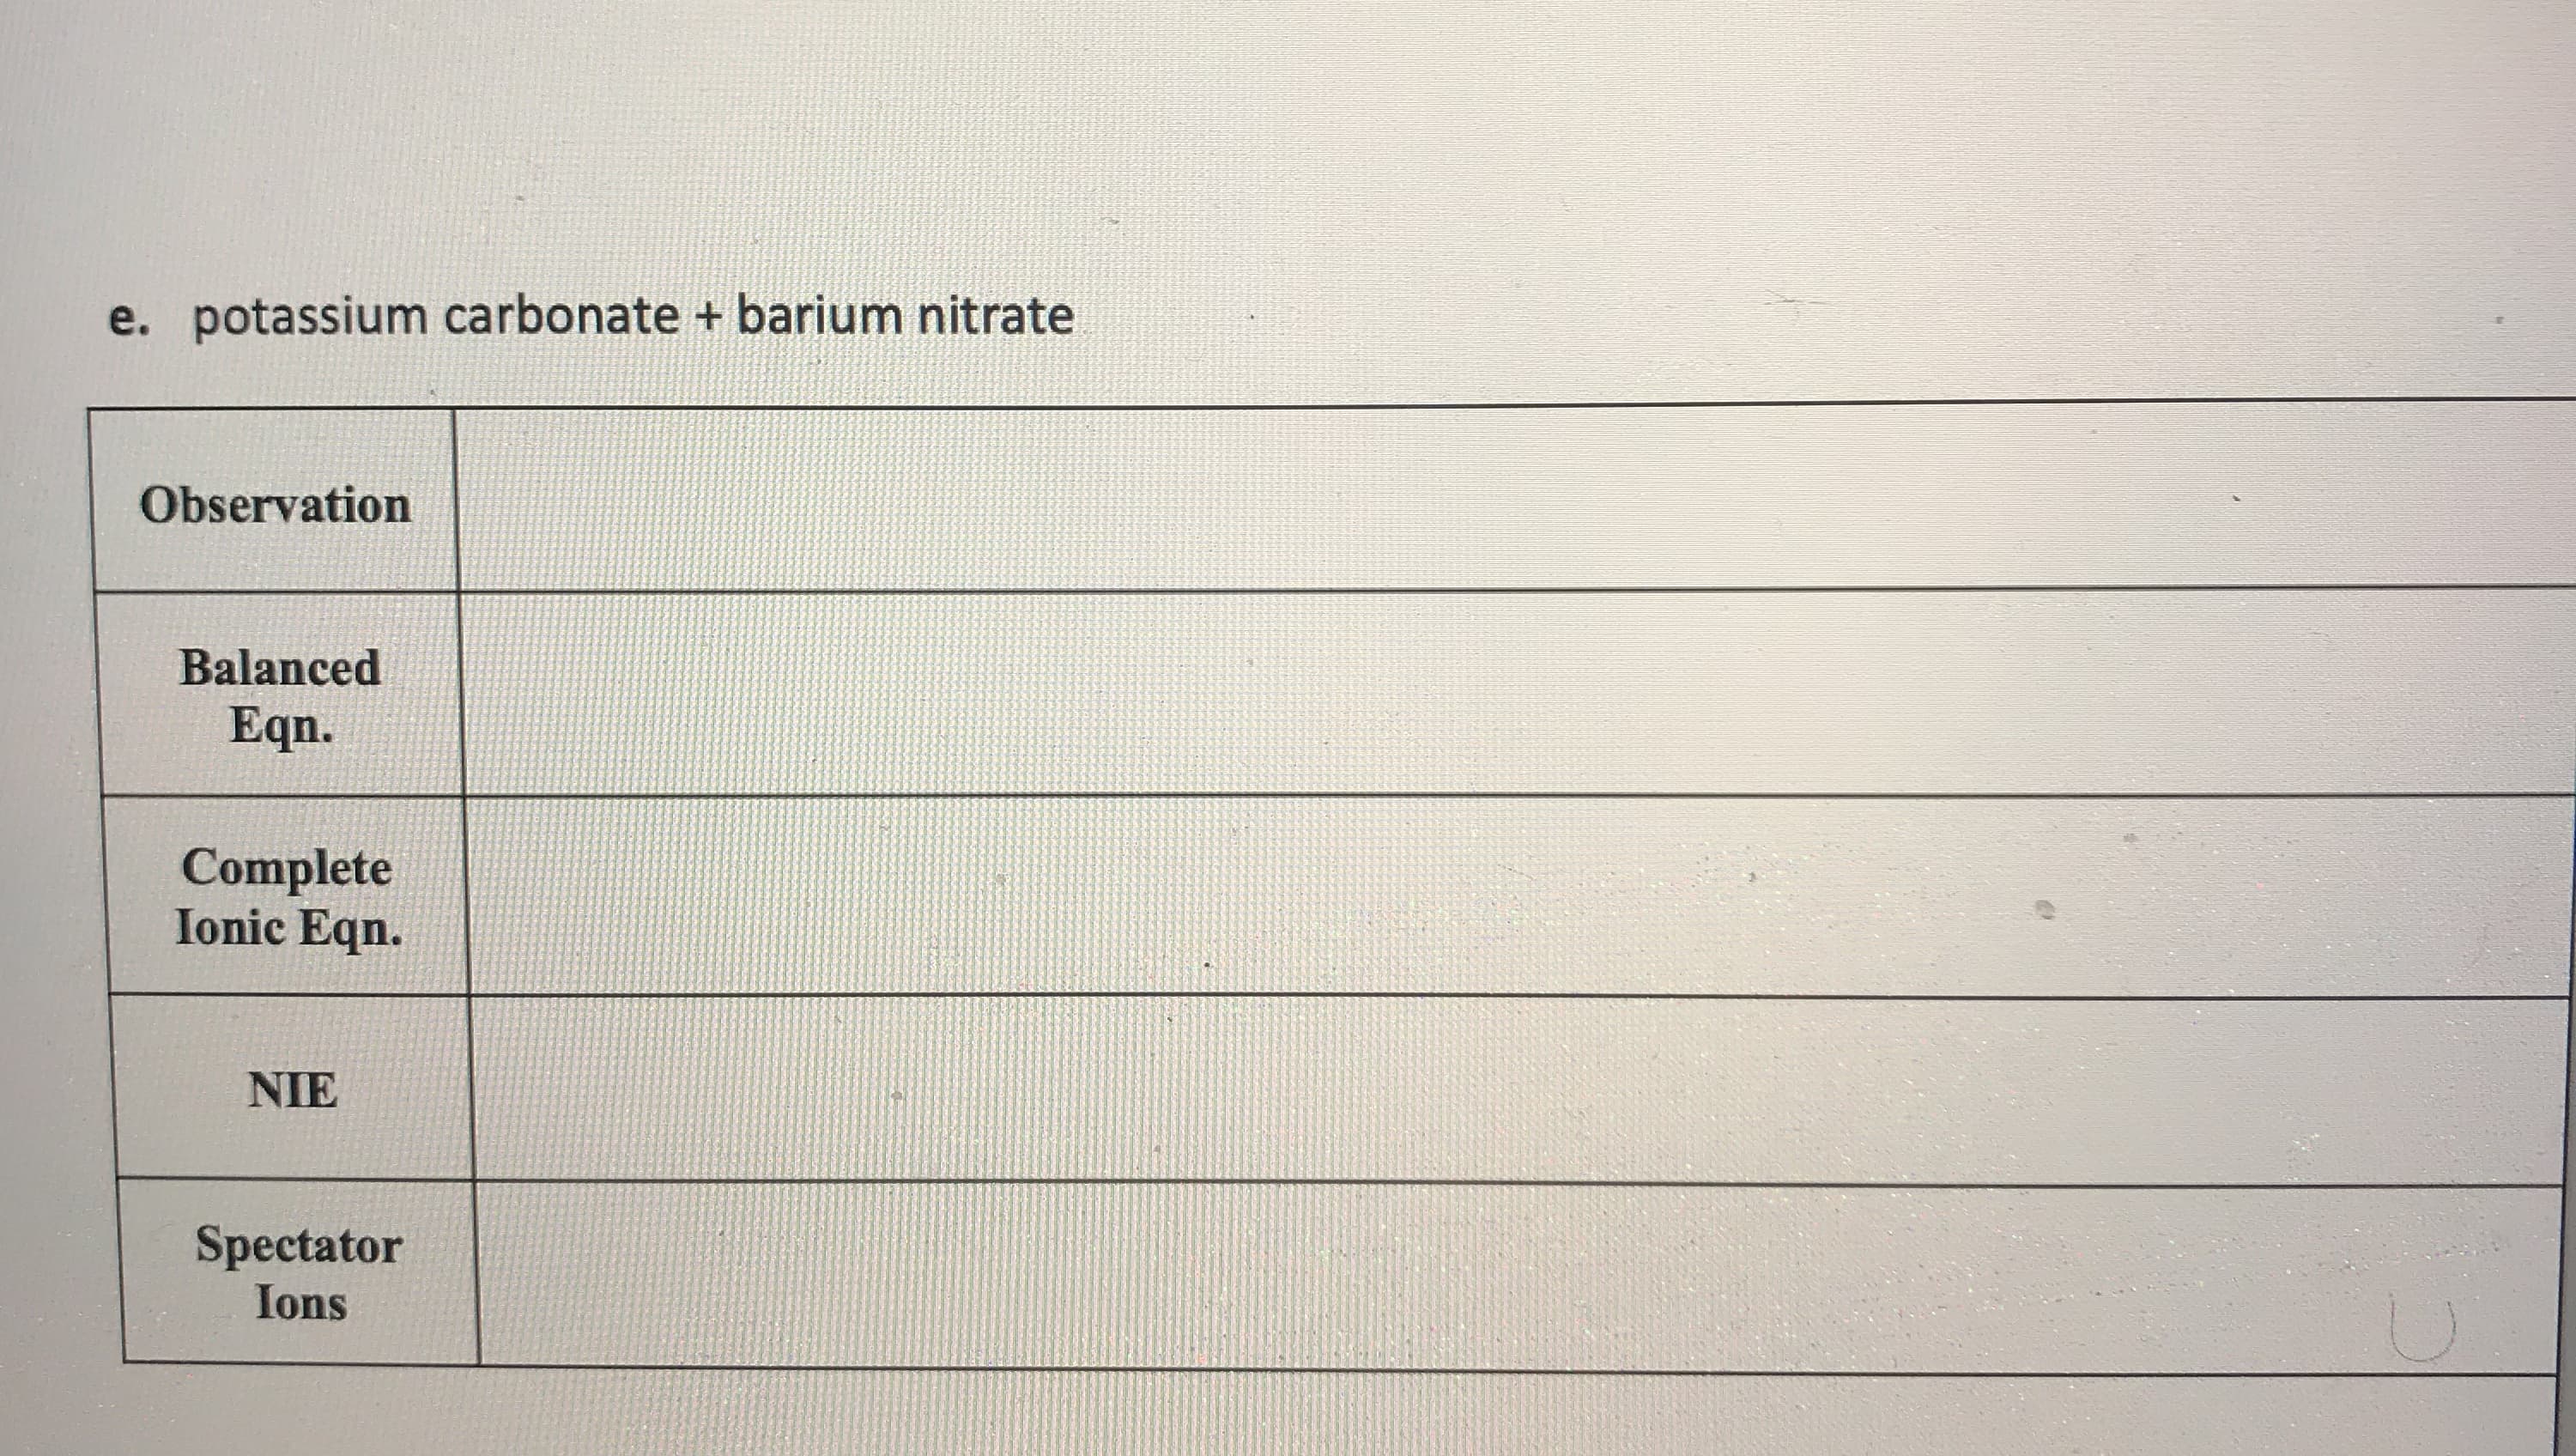 . potassium carbonate + barium nitrate
